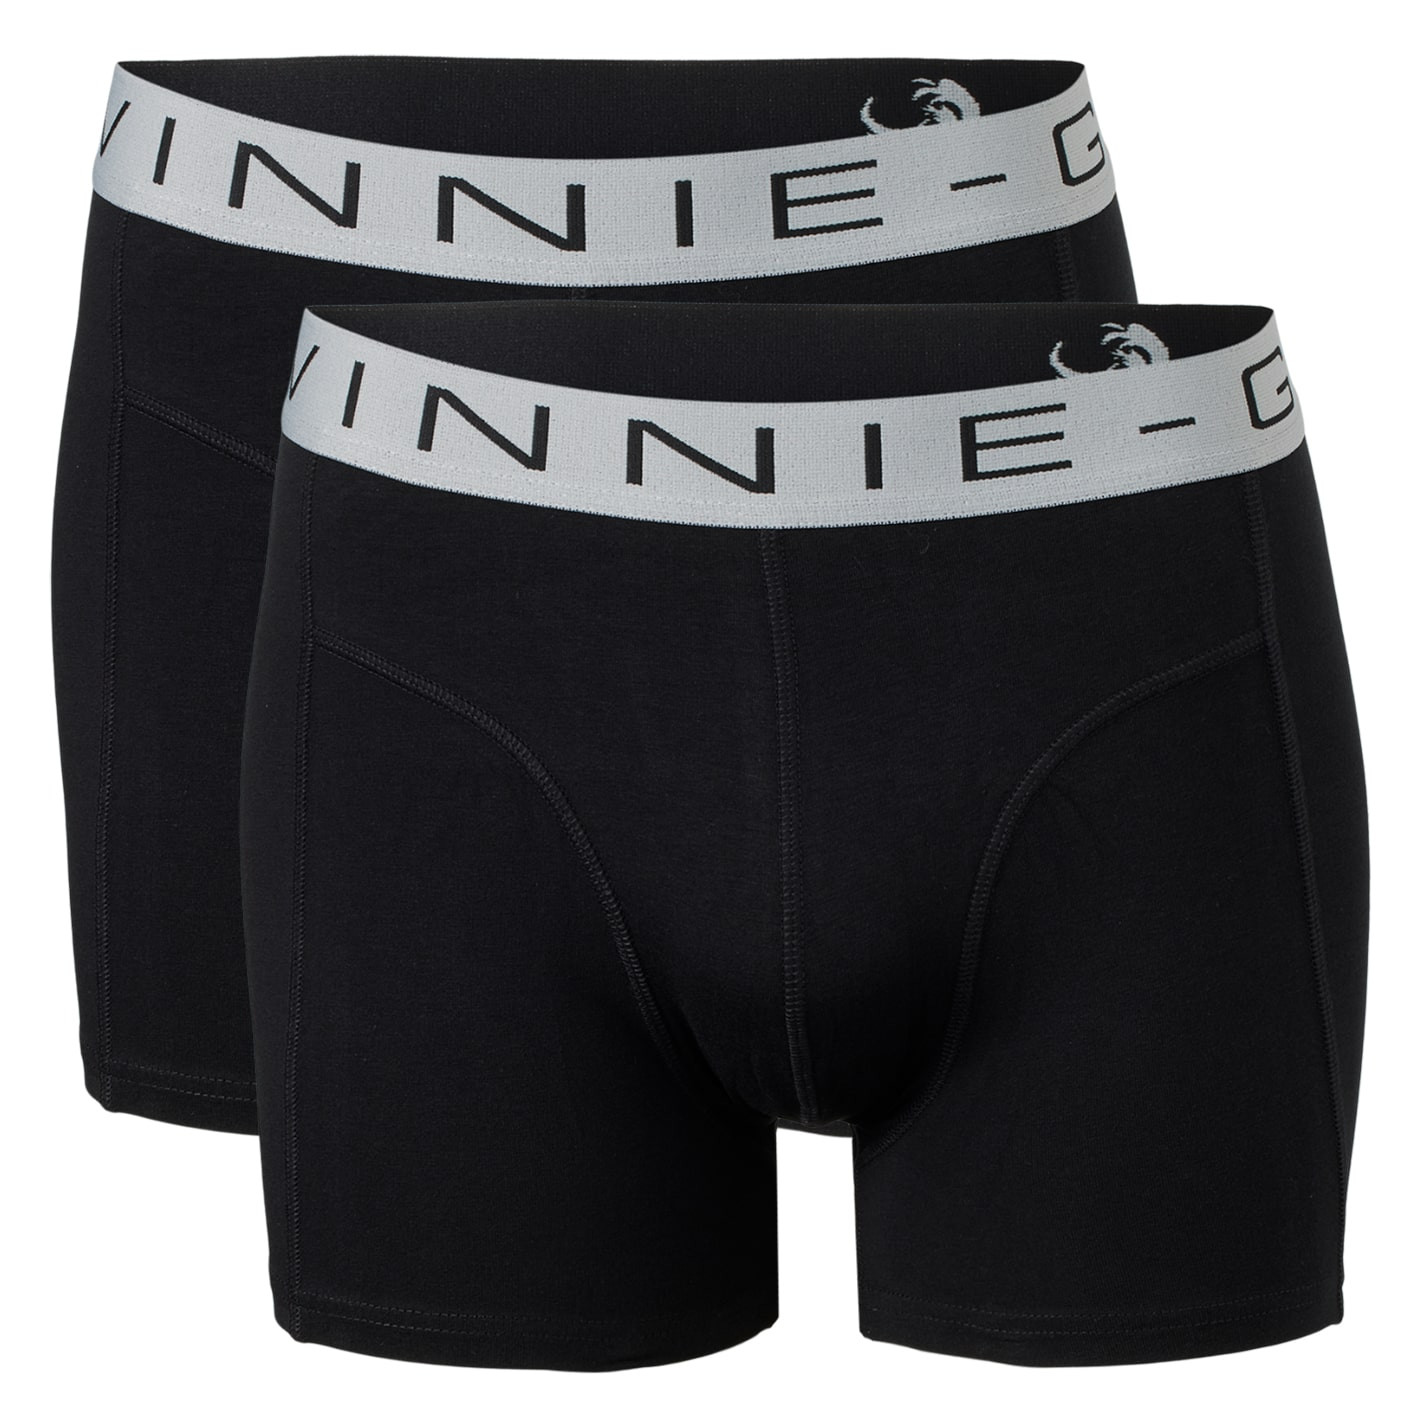 Vinnie-G Boxershorts 2-pack Black/Grey-L